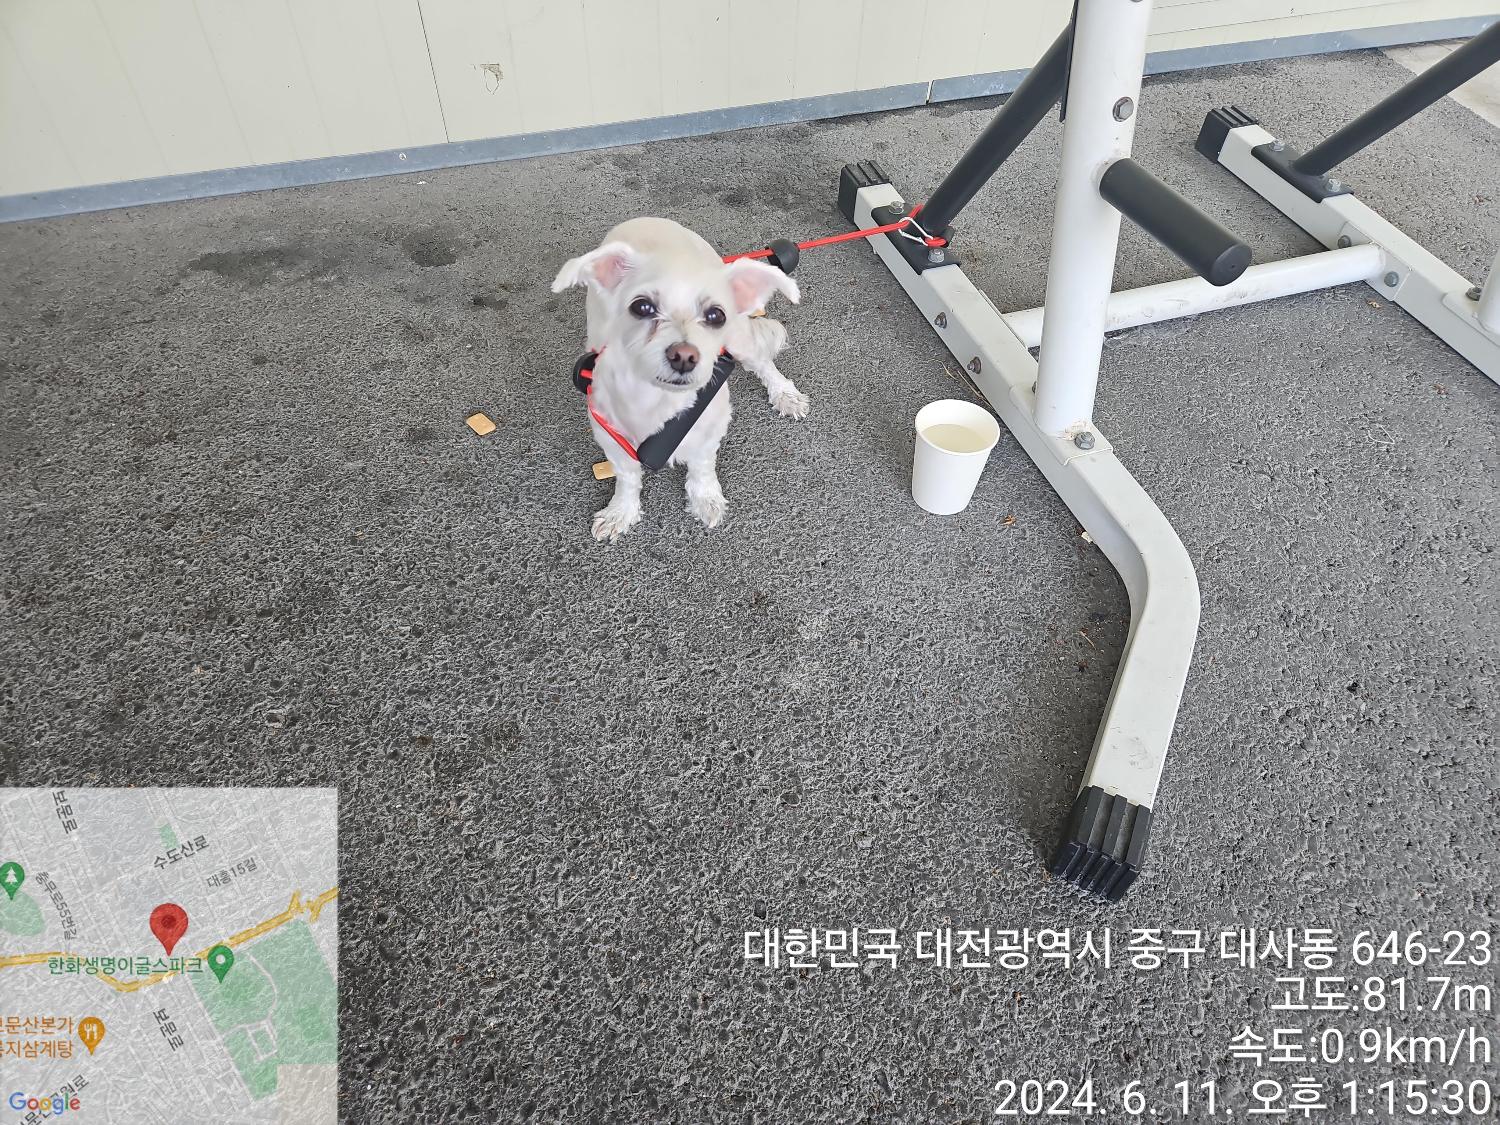 공고 번호가 대전-중구-2024-00111인 말티즈 동물 사진  